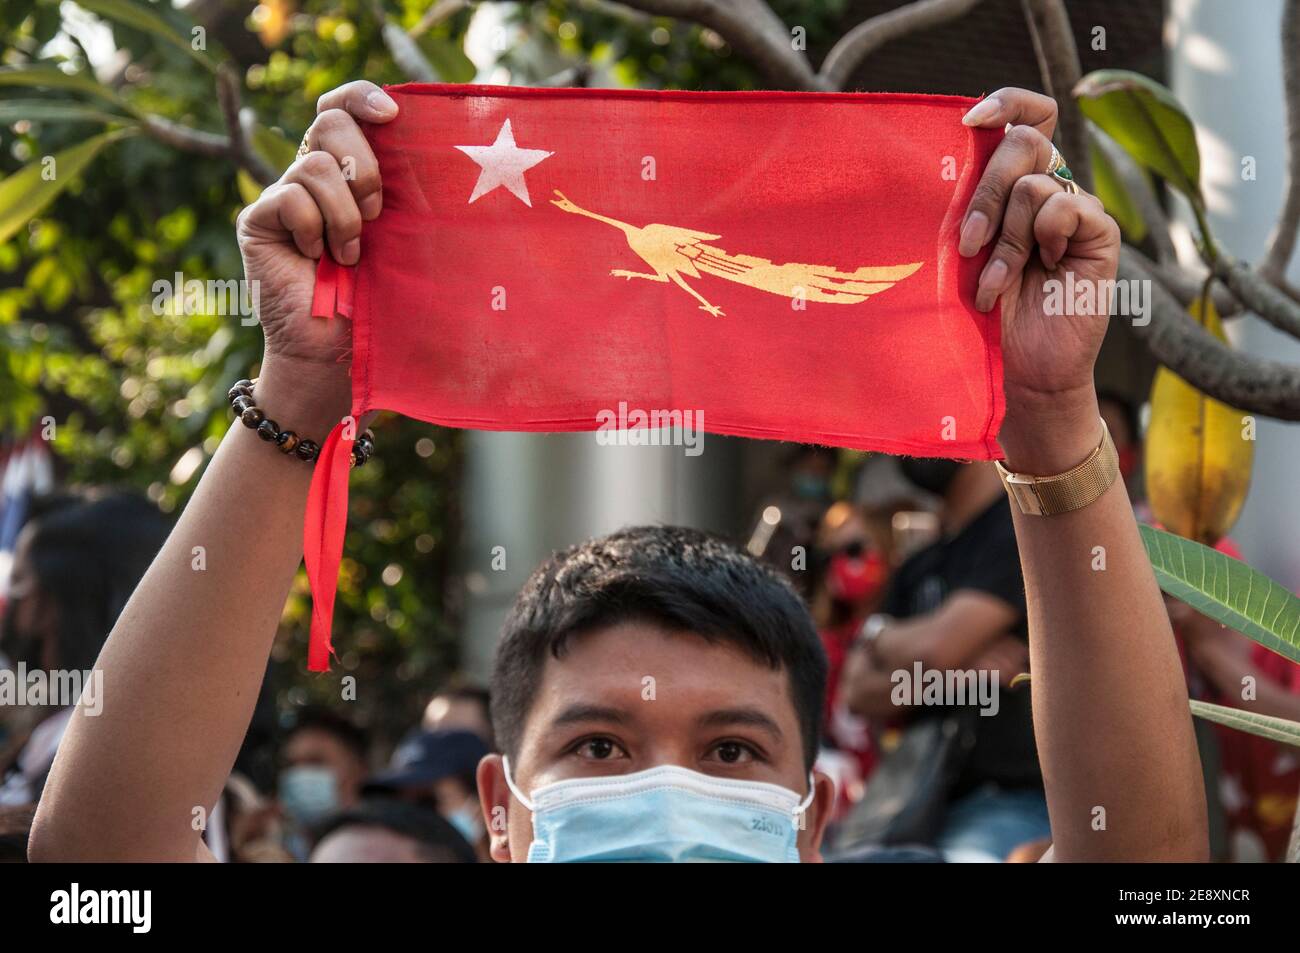 Il sostenitore della NLD detiene una bandiera della NLD durante la manifestazione. I sostenitori della Lega nazionale per la democrazia (NLD) e i manifestanti anti anti-colpo thailandesi si radunano fuori dall'ambasciata del Myanmar dopo che l'esercito del Myanmar ha preso il potere da un governo civile democraticamente eletto e ha arrestato il suo leader Aung San Suu Kyi. La polizia tailandese in rivolta ha poi disperso i dimostranti. Foto Stock